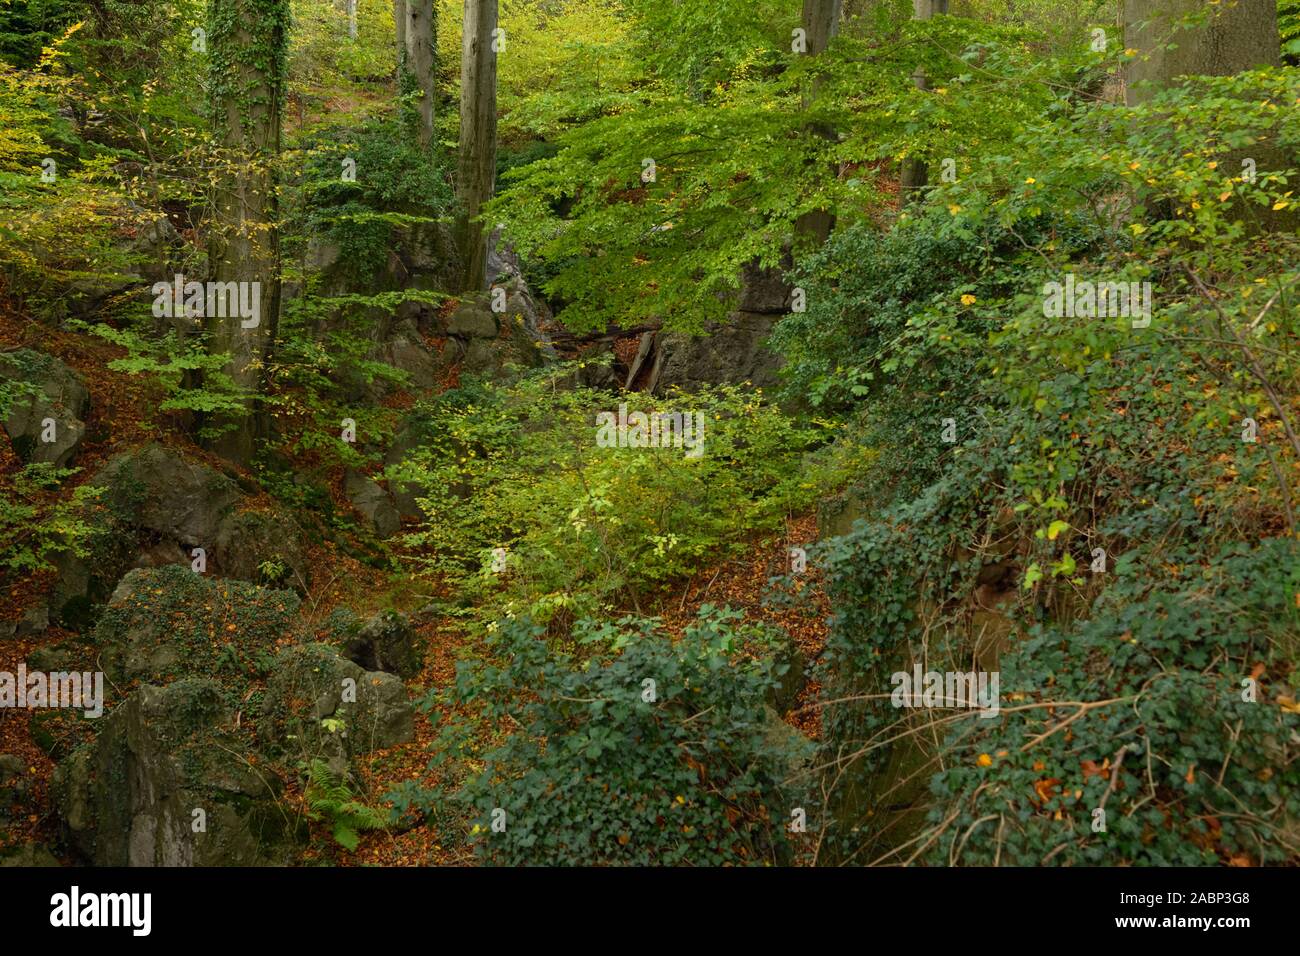 Felsenmeer, berühmte Naturschutzgebiet, Meer von Felsen in der Nähe von Hemer, Sauerland, wild-romantischen Buchenwald im Herbst, Herbst, in Deutschland, in Europa. Stockfoto